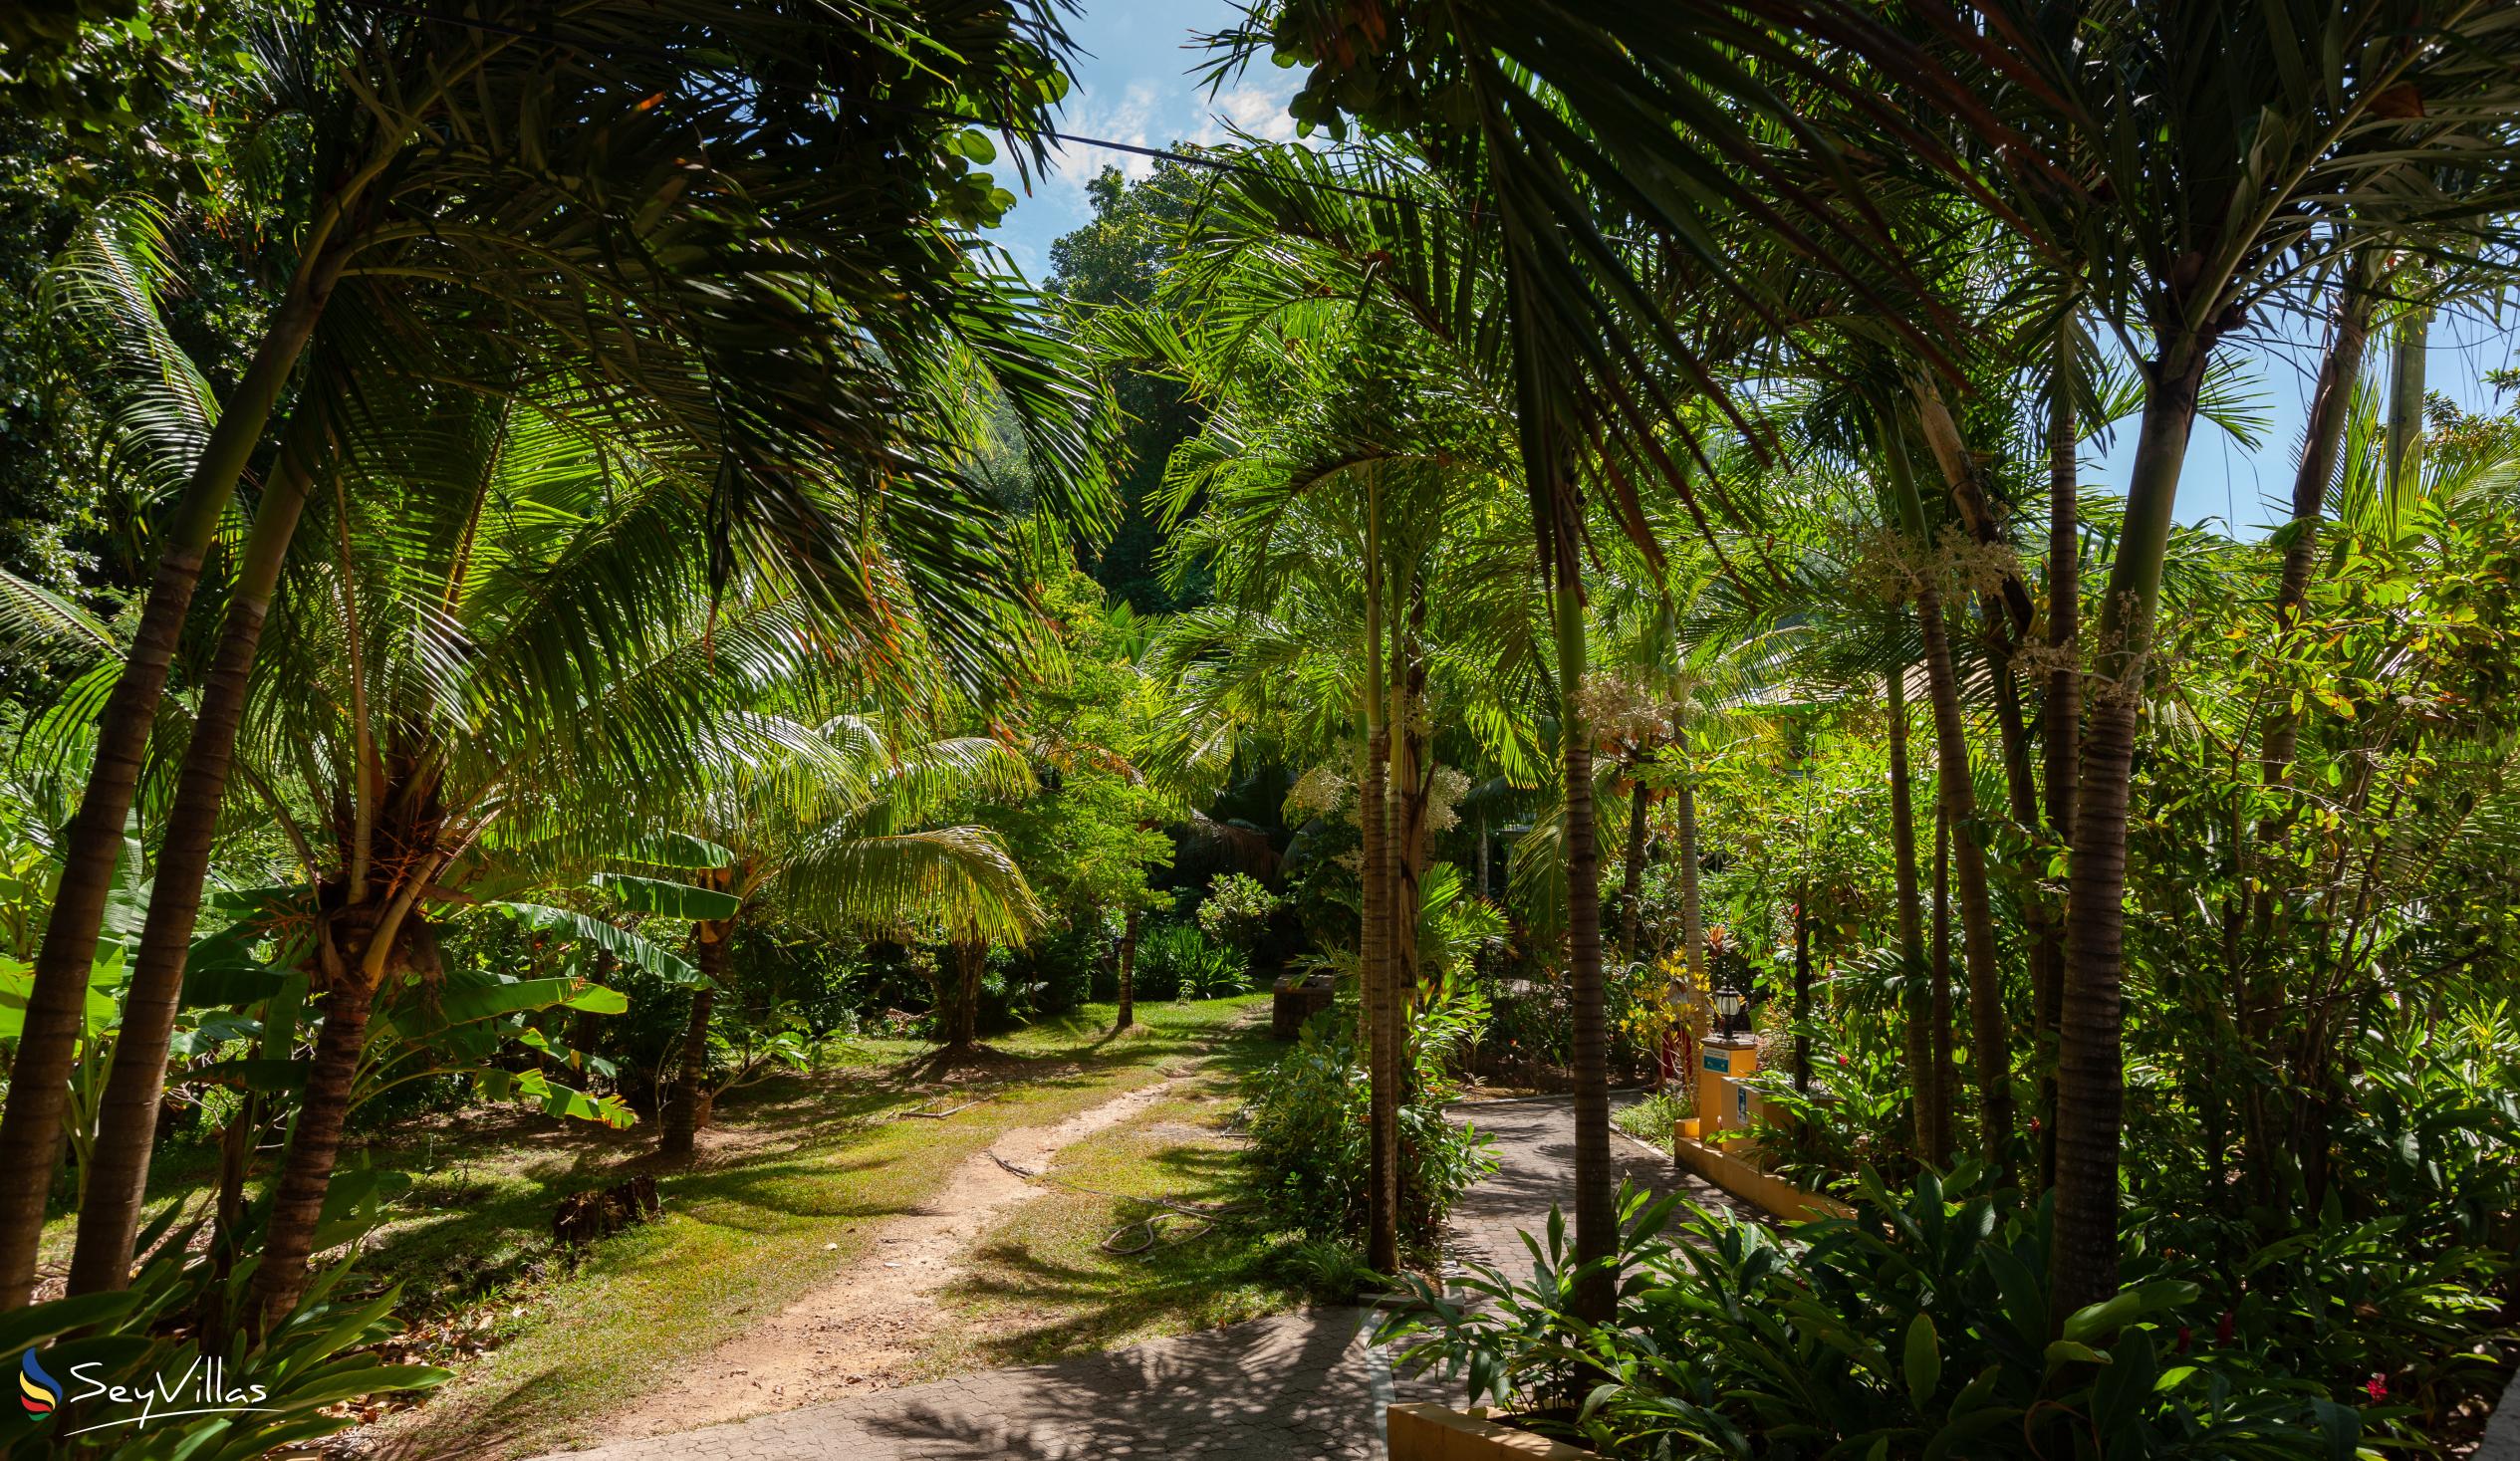 Photo 73: O'Soleil Chalets - Outdoor area - La Digue (Seychelles)